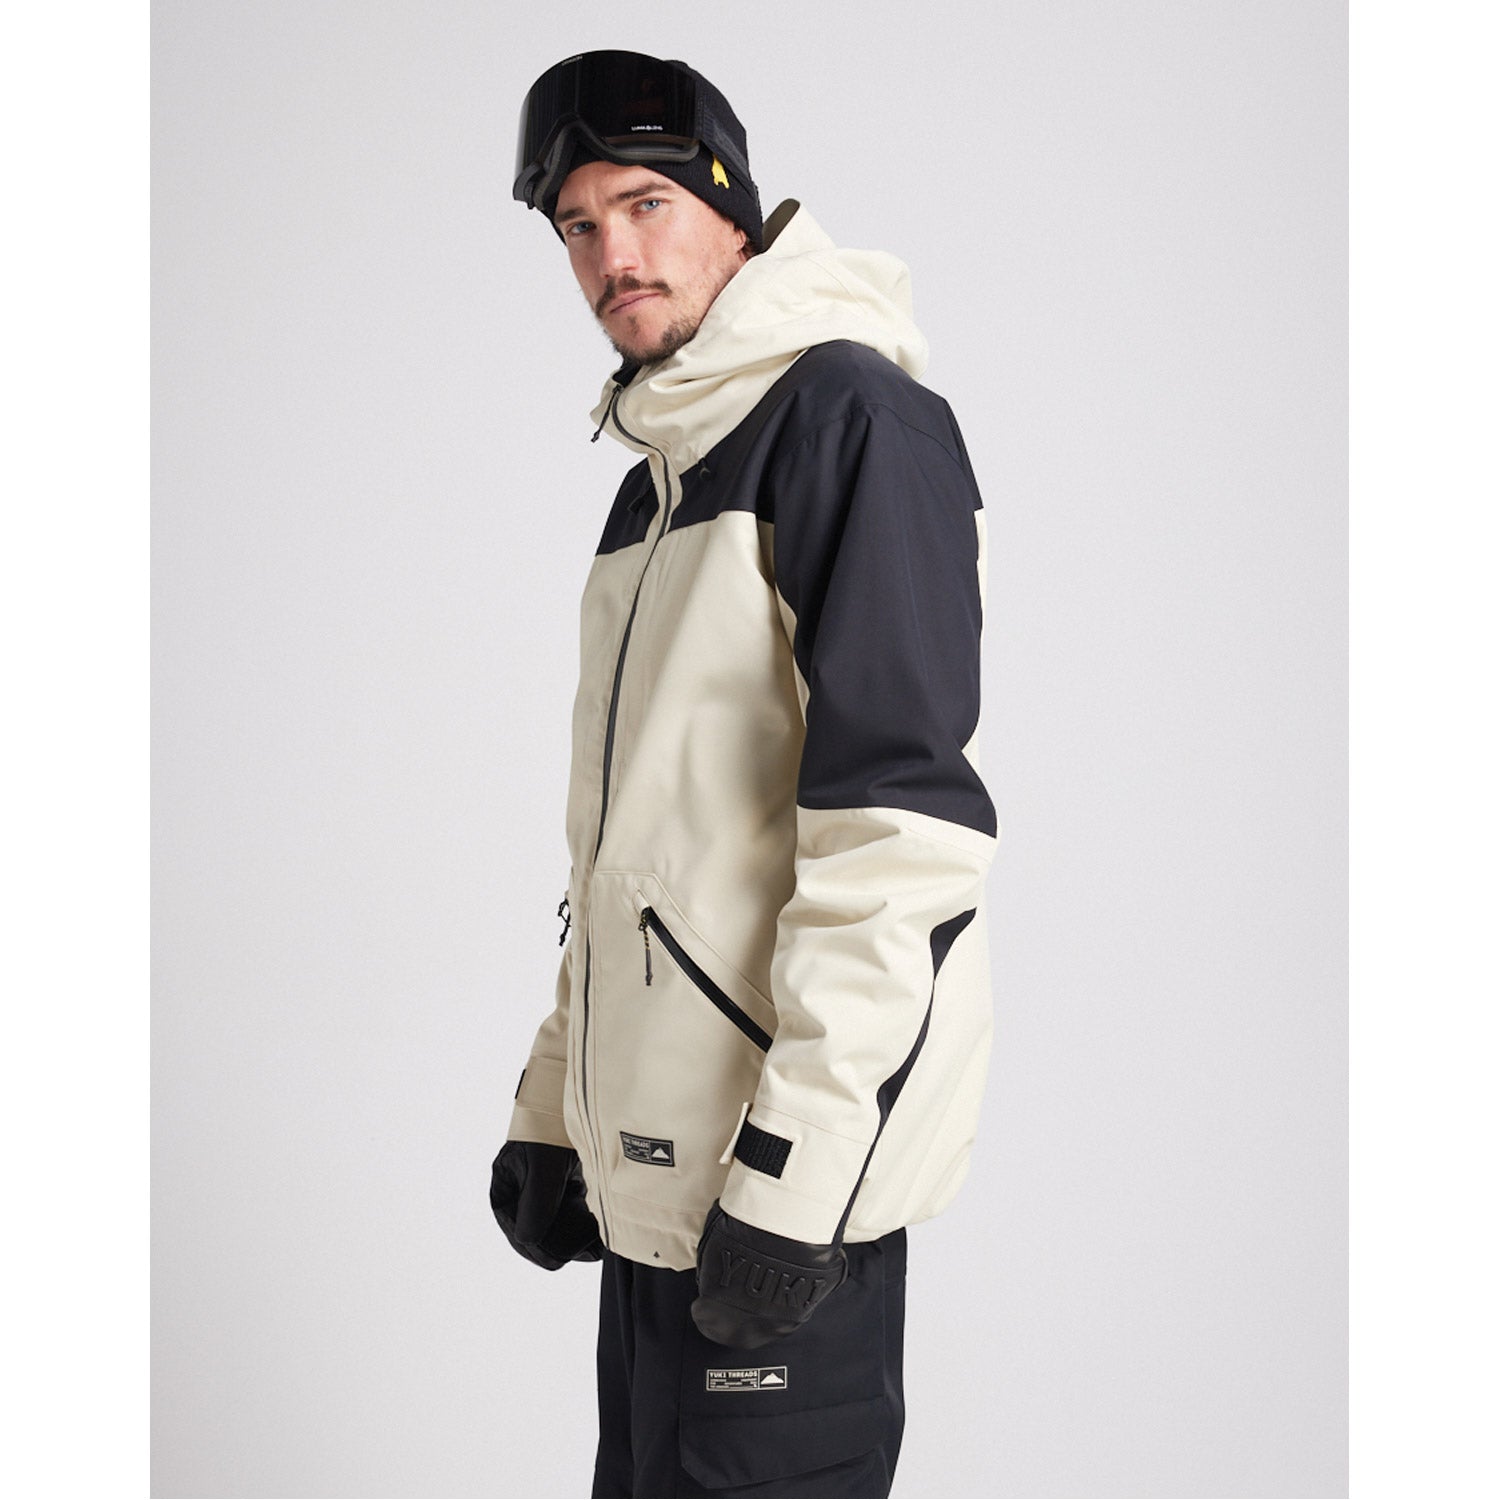 Northbound Snowboard Jacket